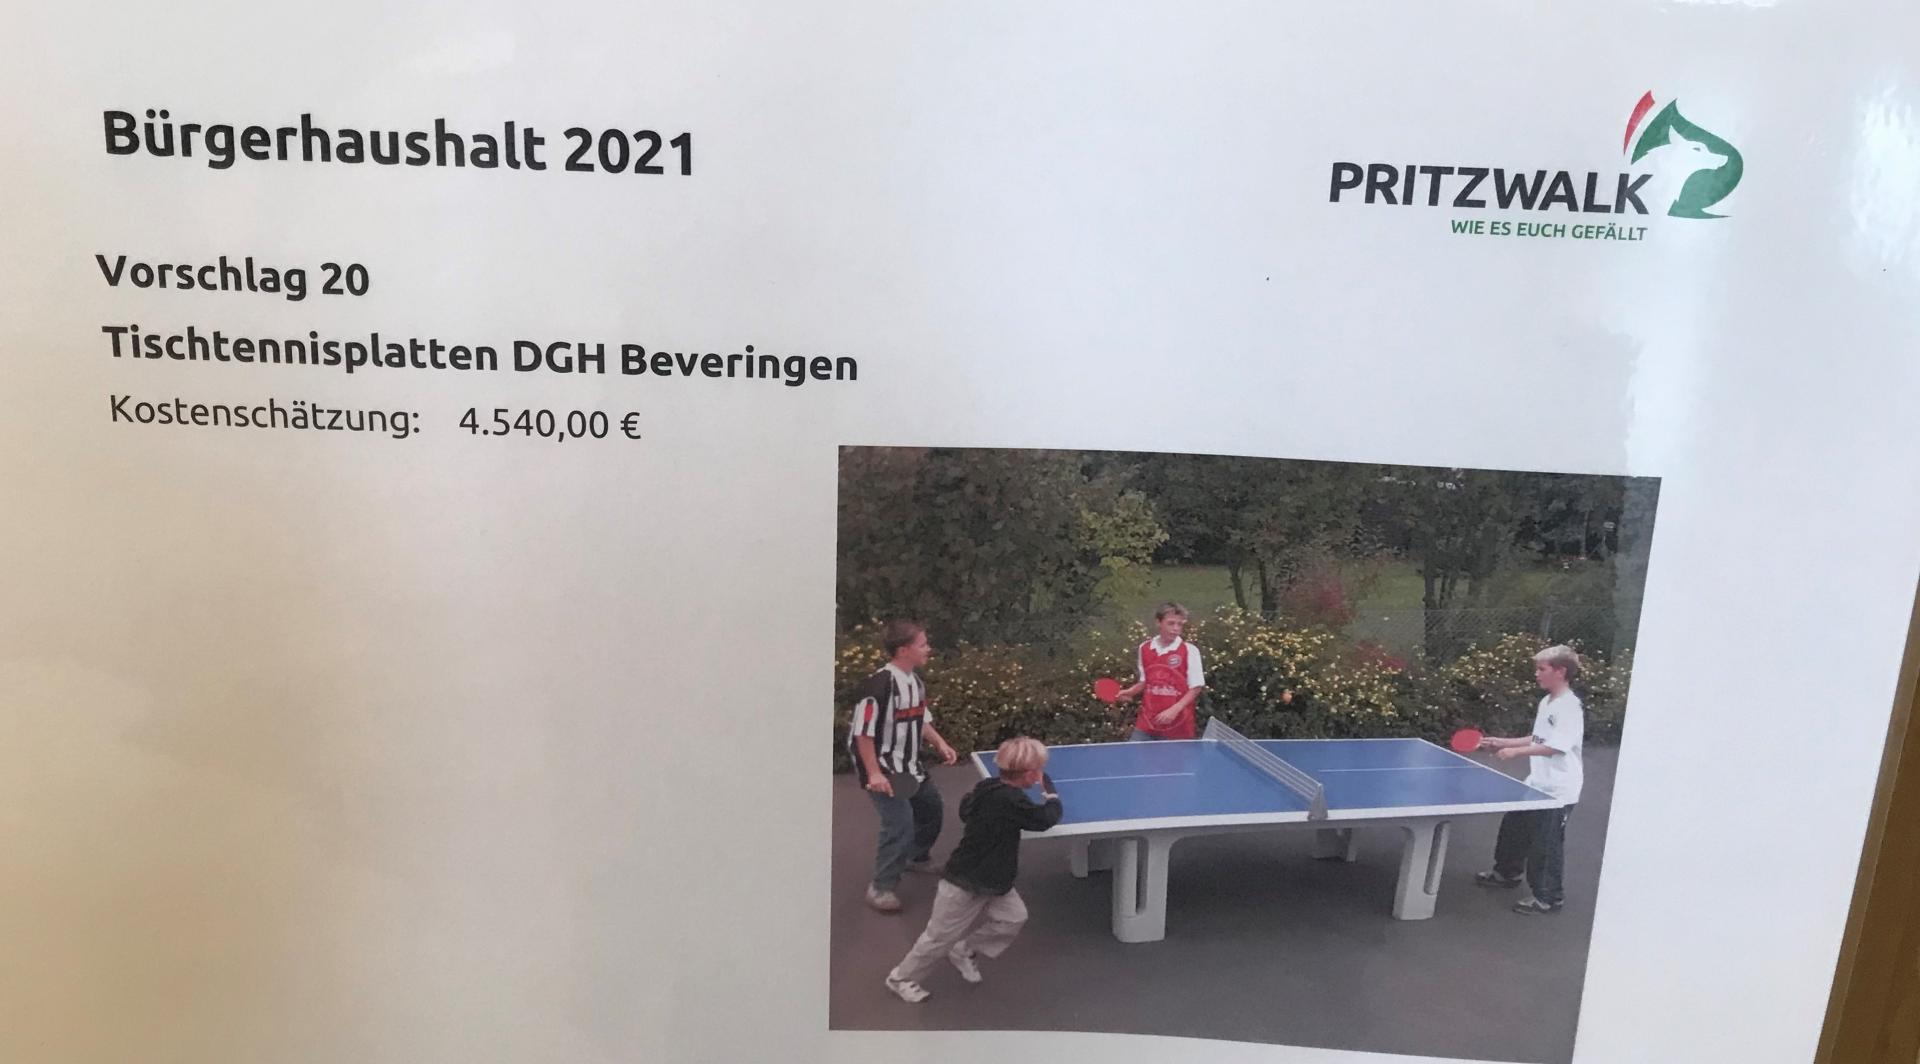 2 feste Tischtennisplatten am DGH Beveringen - 4.540,00 €